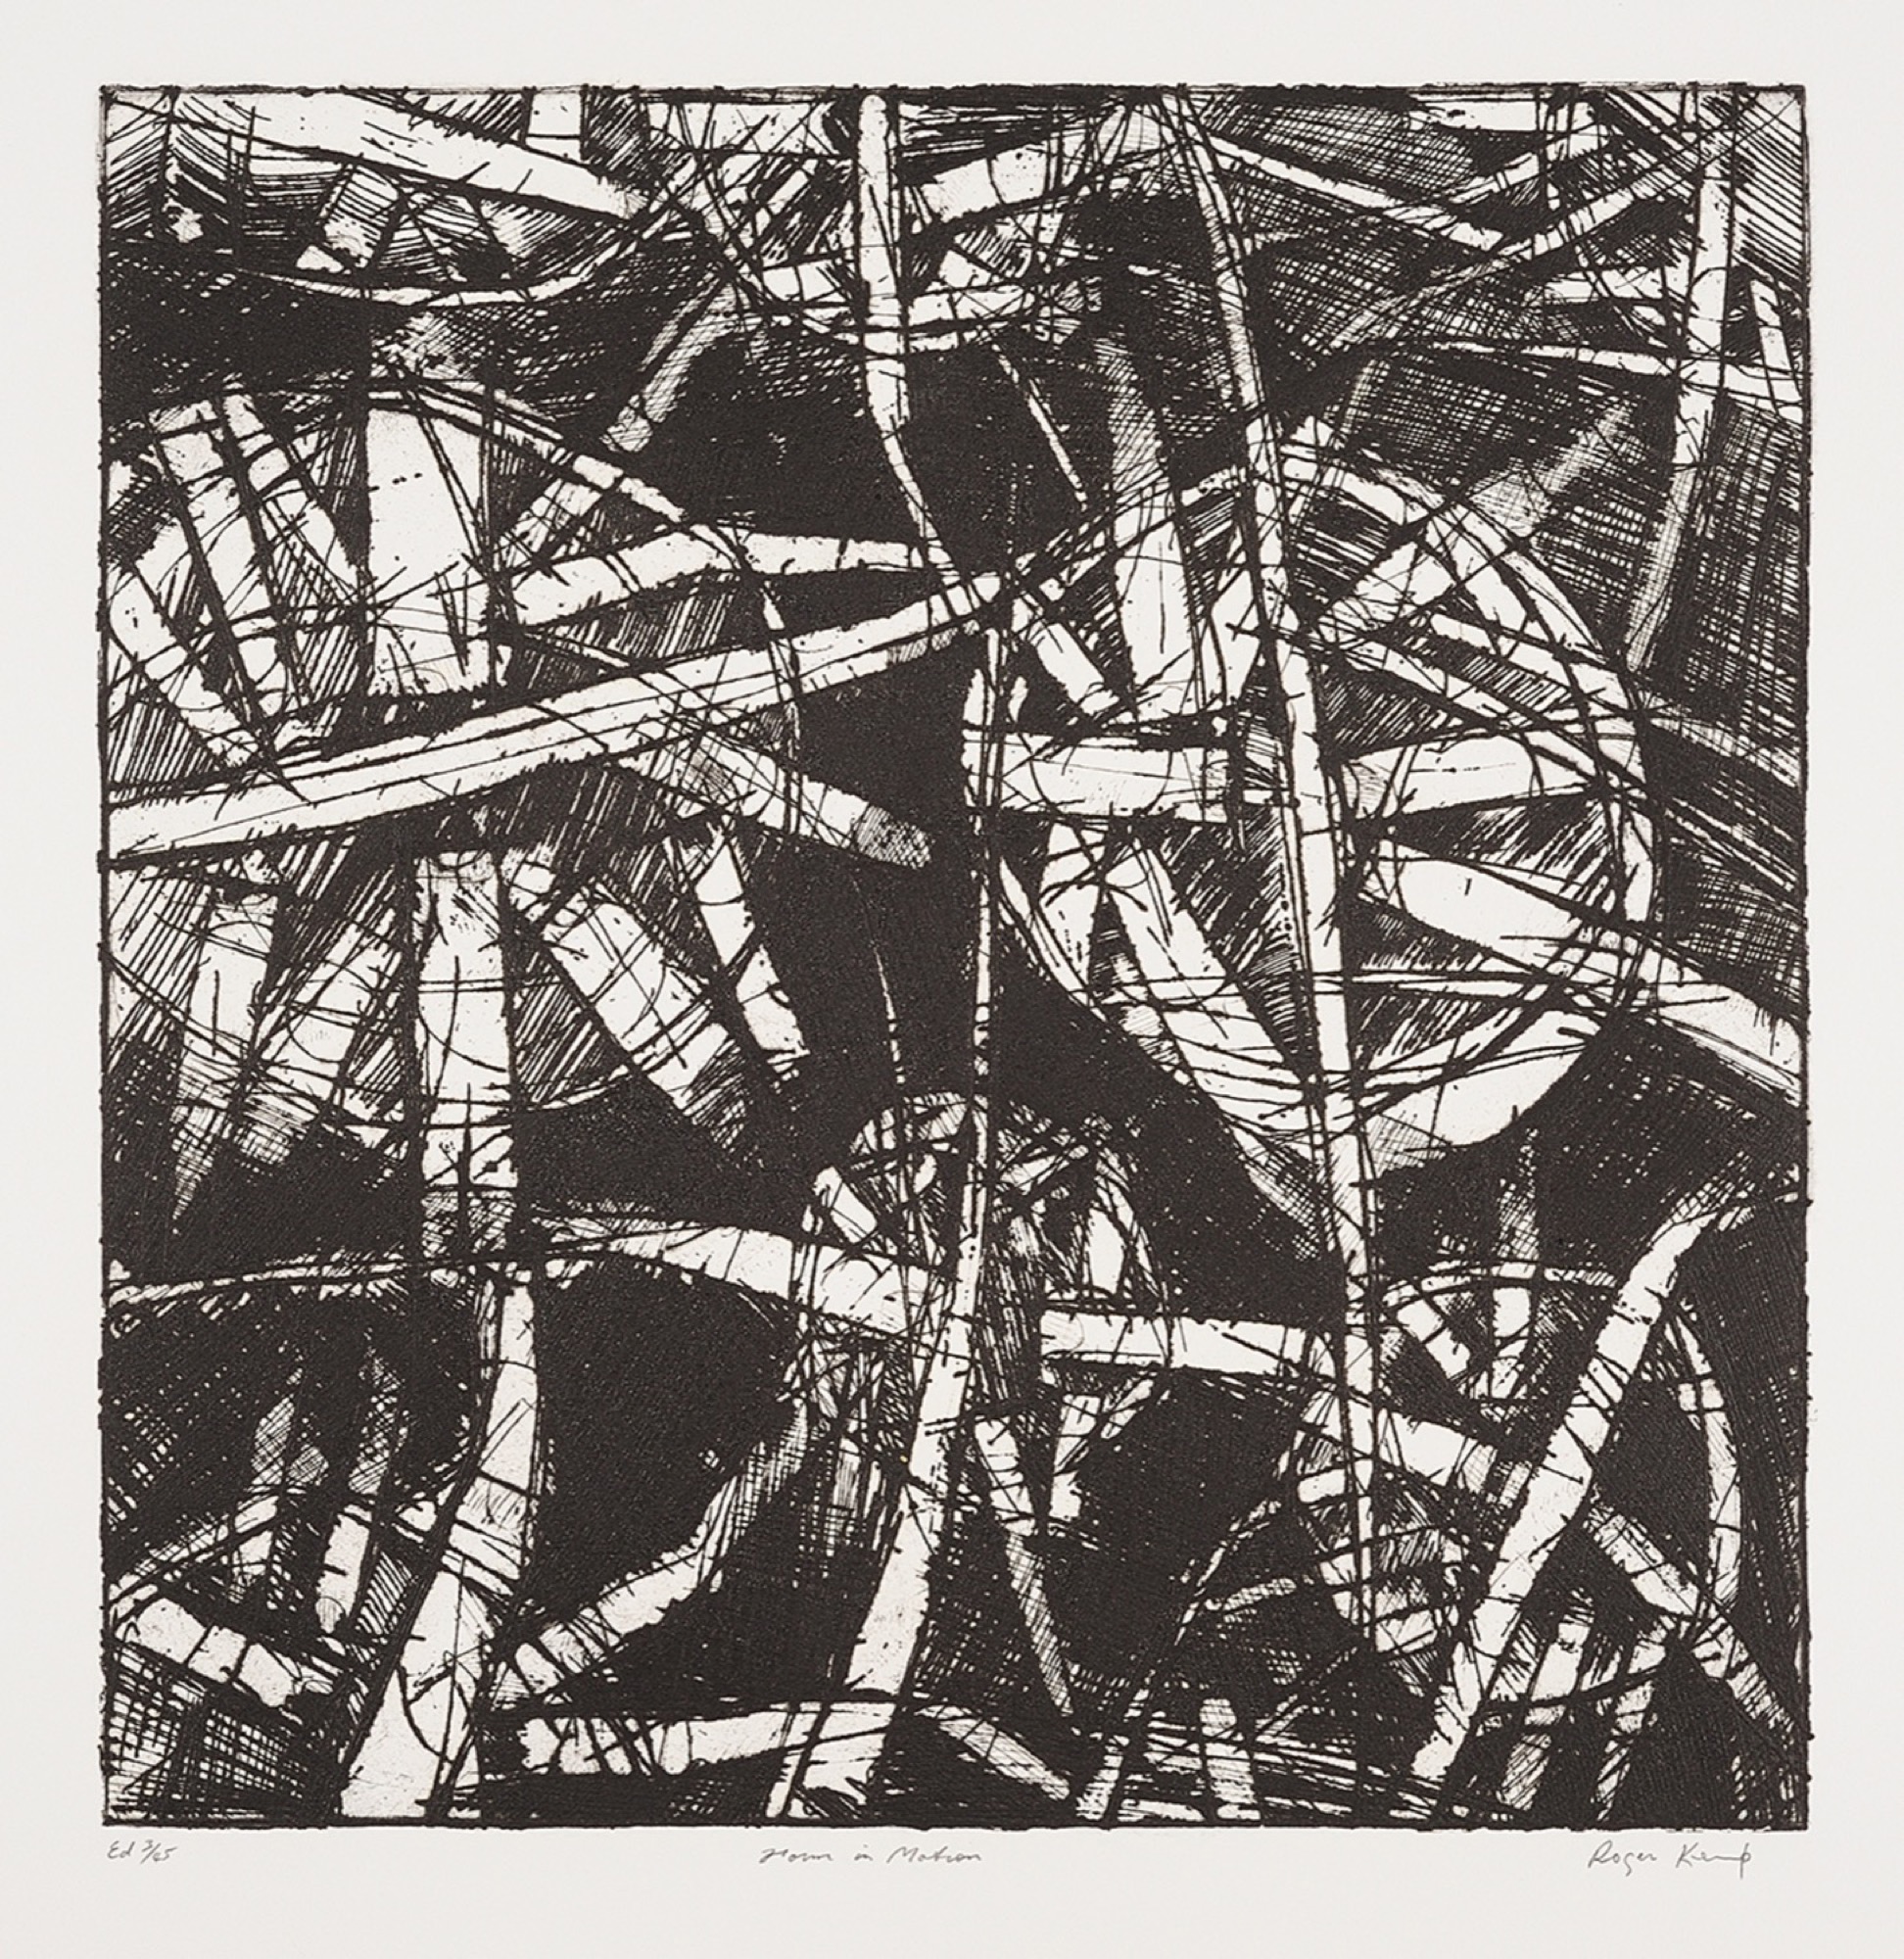 Roger Kemp, <em>Form in Motion</em>, c. 1973 – 1976, etching on paper, 49.8 x 48.8 cm. Copyright Estate of Roger Kemp, Image courtesy Charles Nodrum Gallery